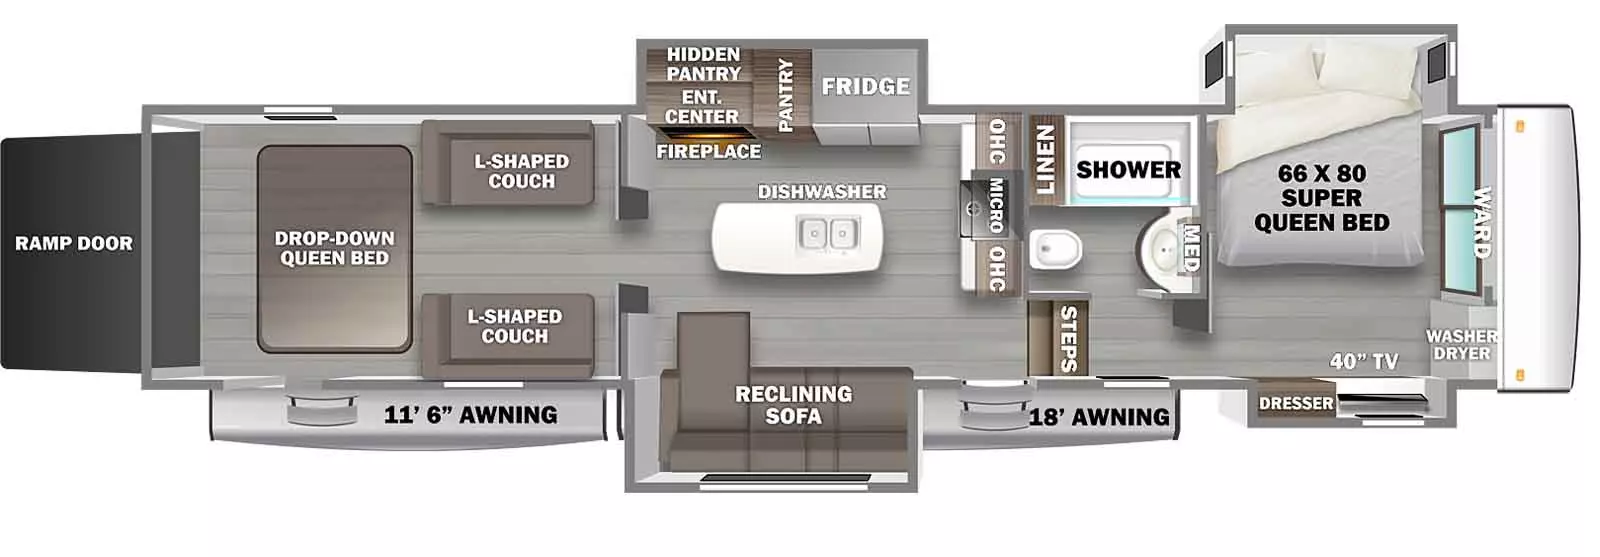 45BATH Floorplan Image